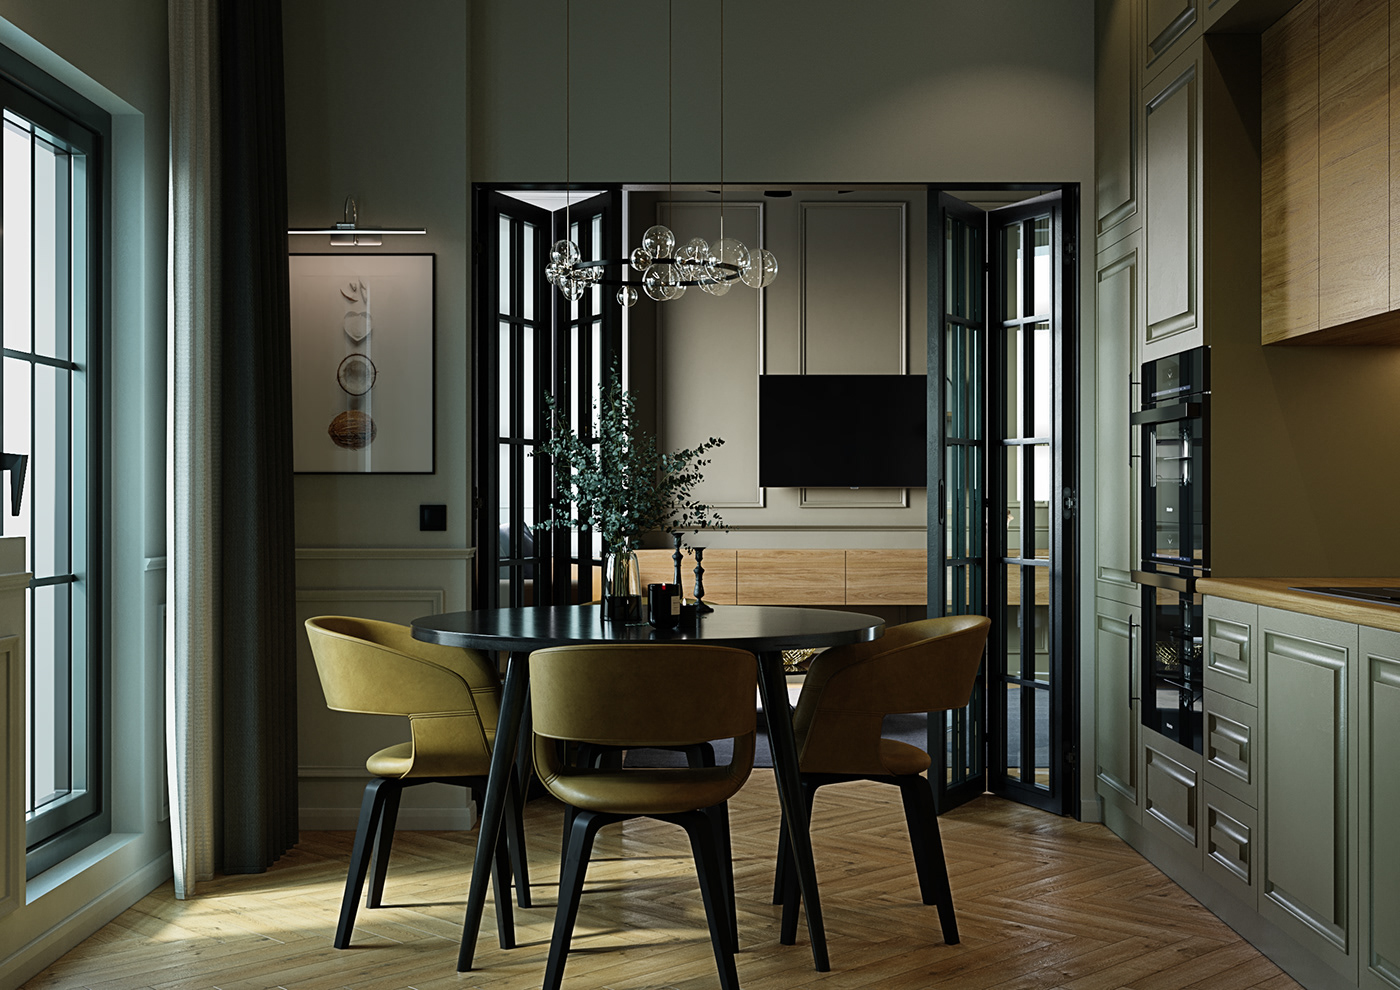 3D 3dmax 3ds max corona render  Interior interior design  kitchen Render visualization